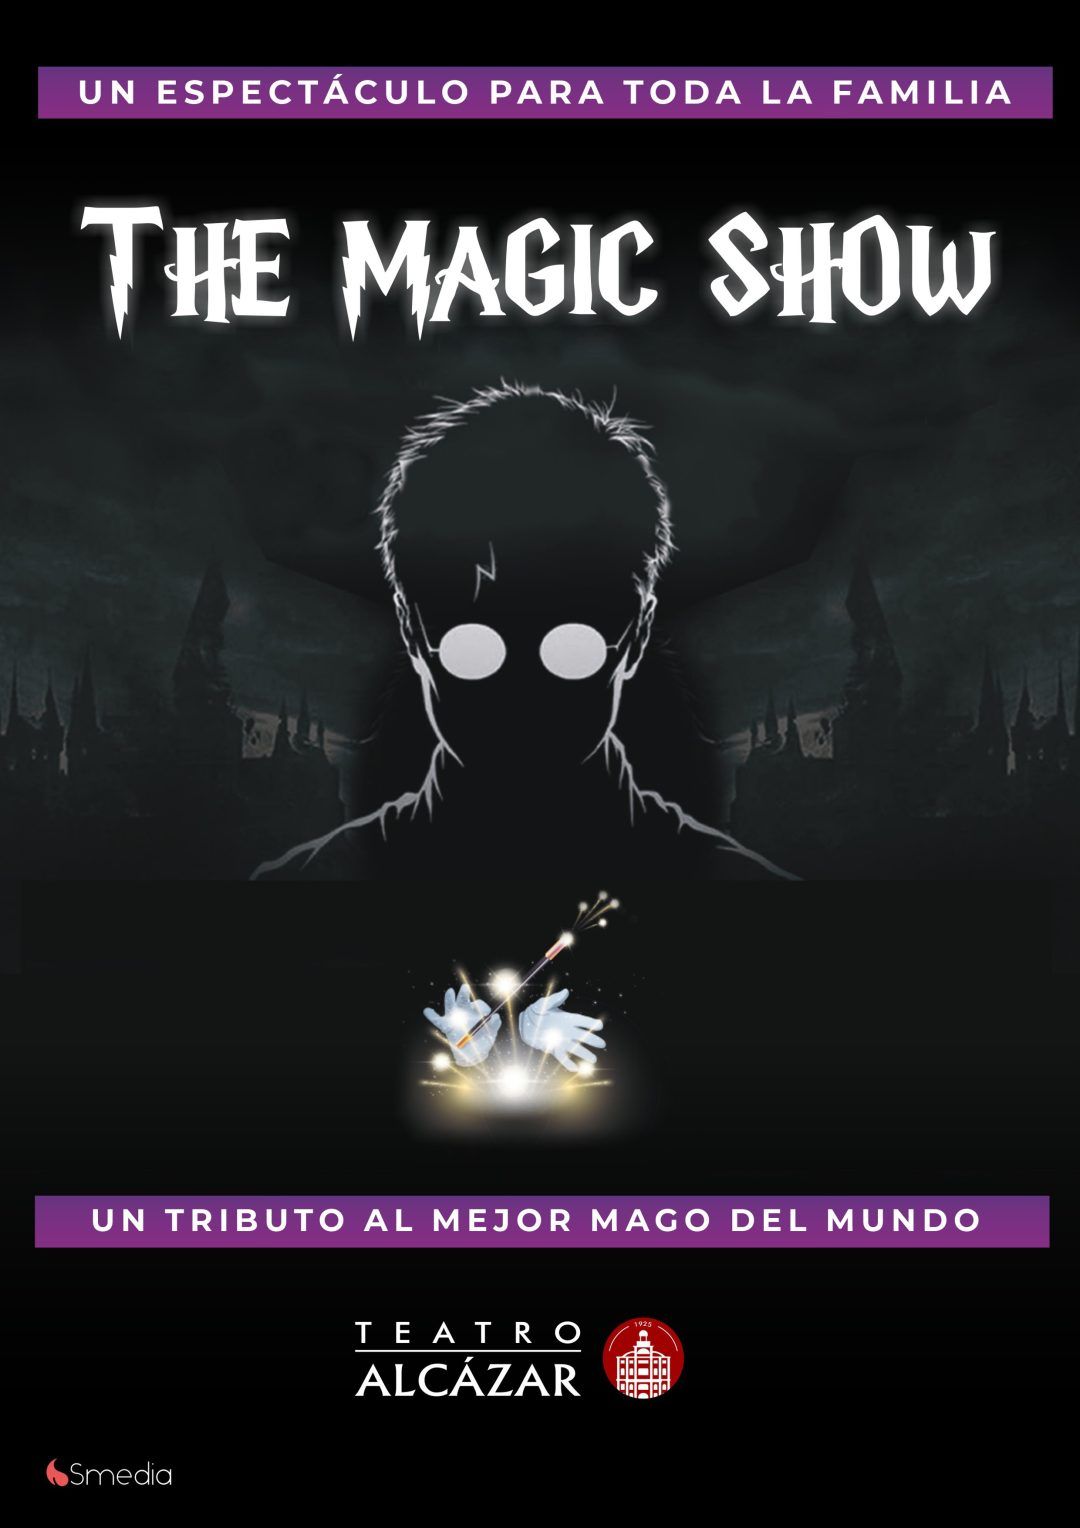 THE MAGIC SHOW en el Teatro Alcázar